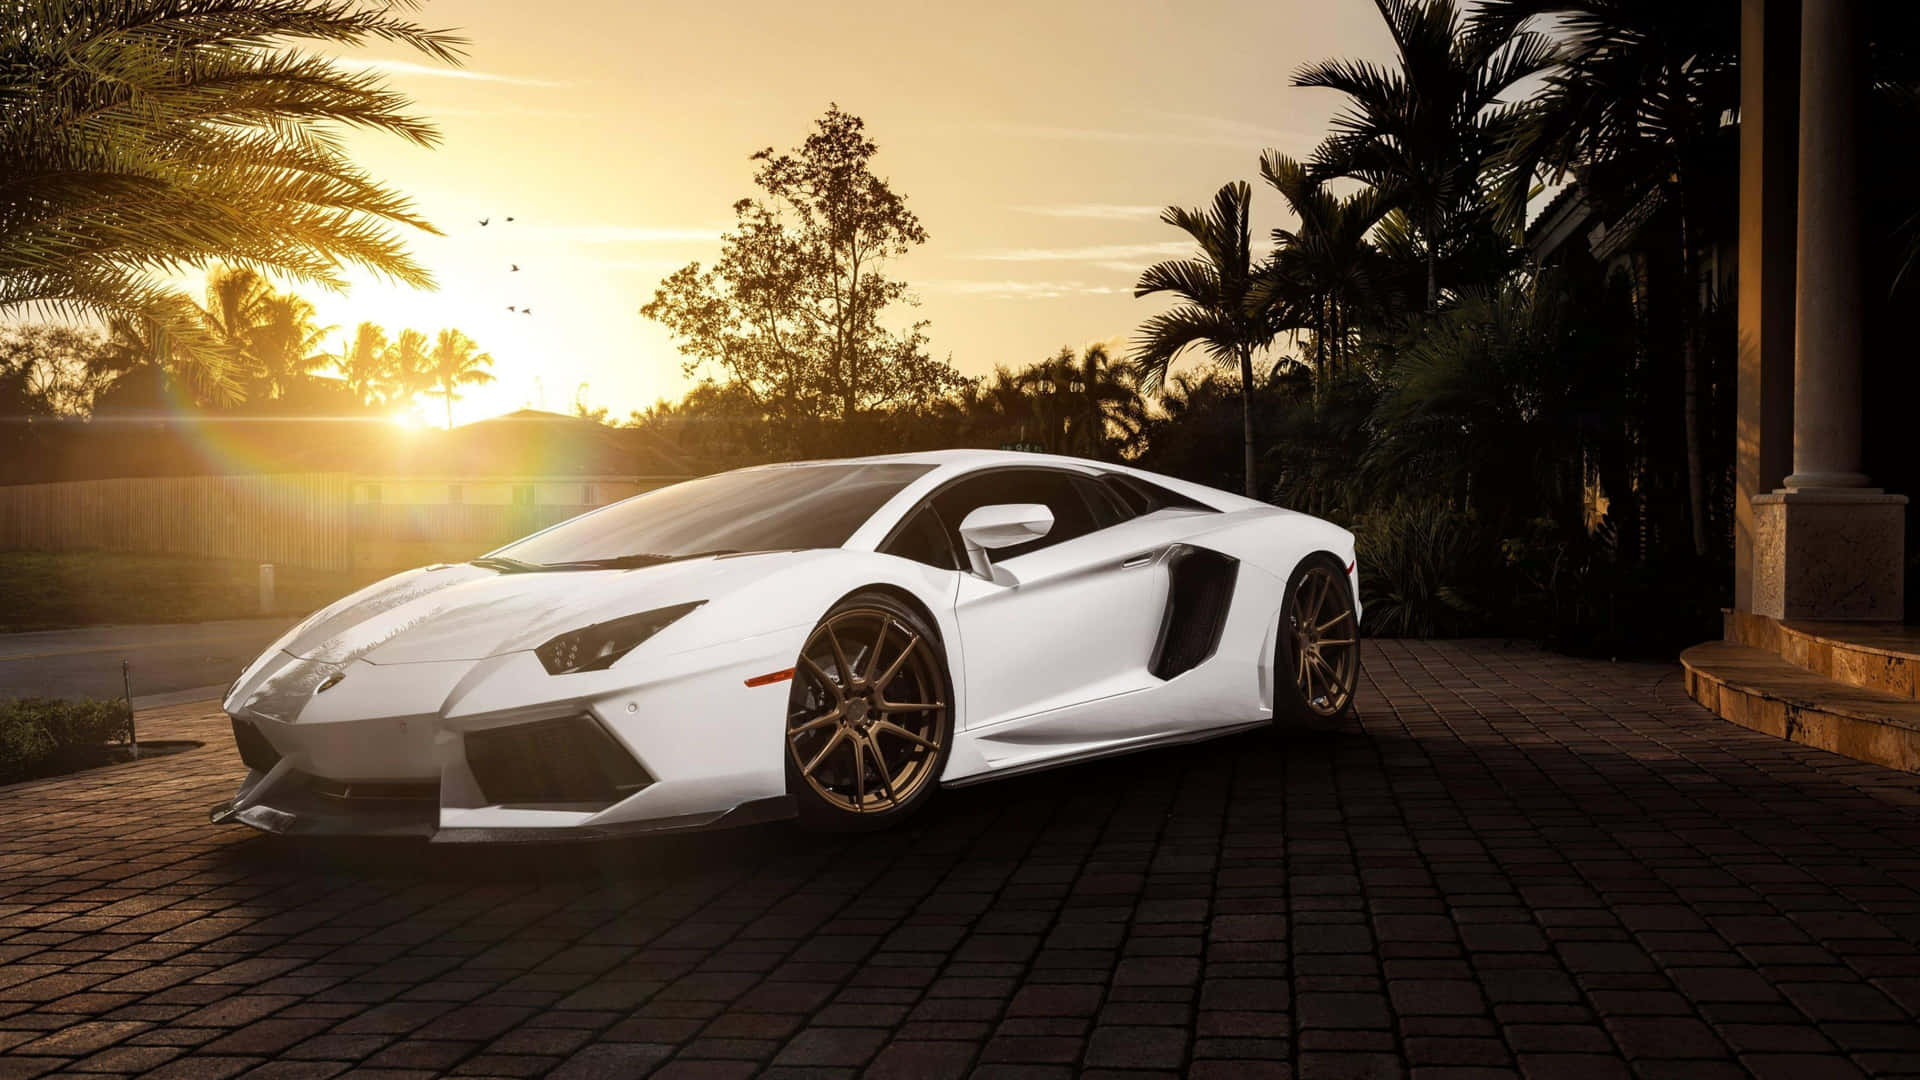 Lyxigaitalienska Bil-tillverkaren Lamborghinis Fantastiska 4k Superbil.